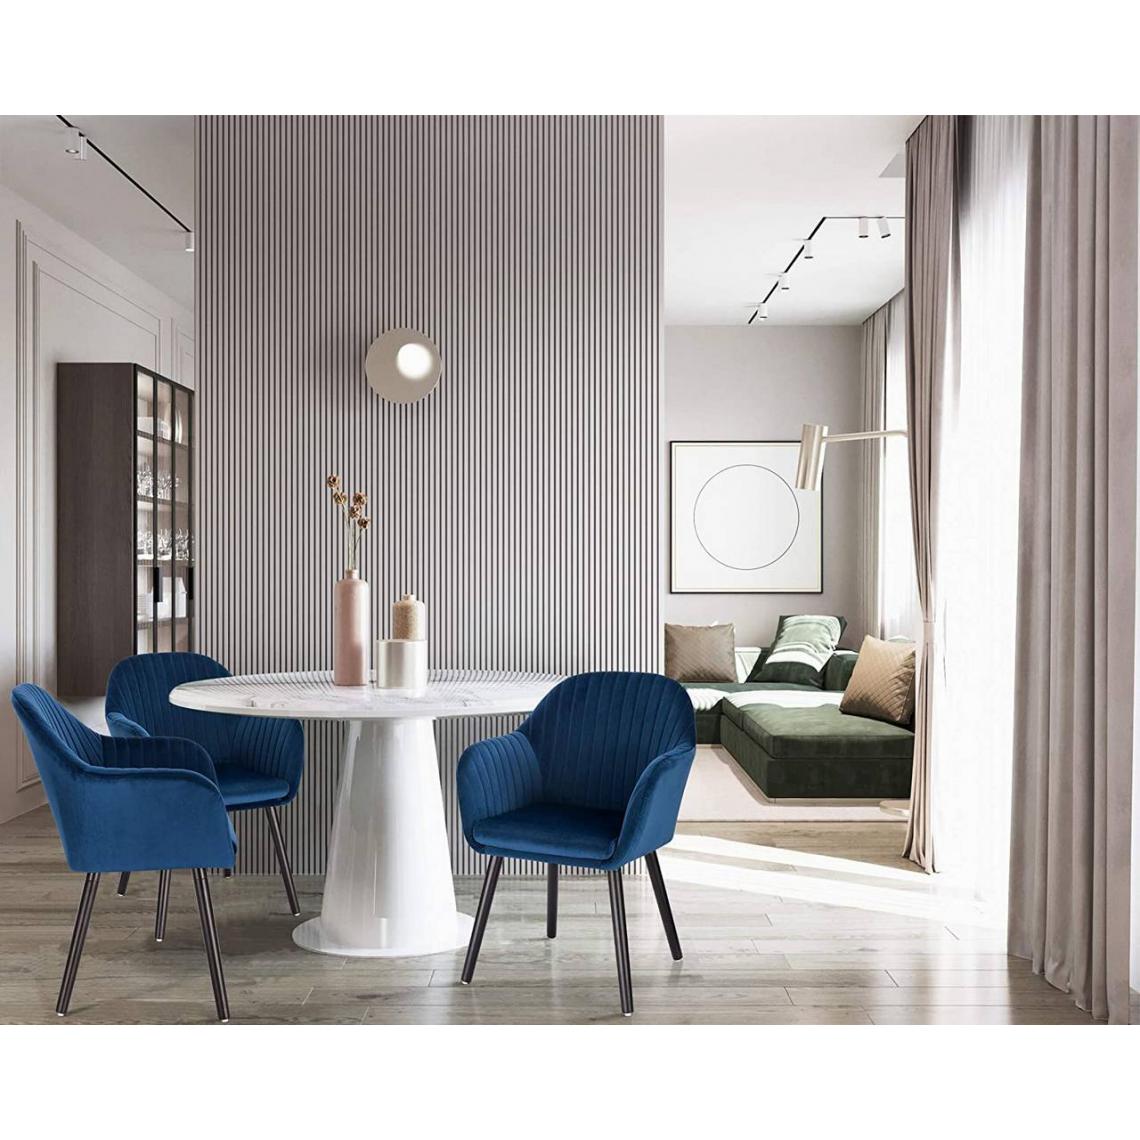 MercatoXL - chaise de salle en velours et bois - modèle bleu 2.0 - Tables à manger